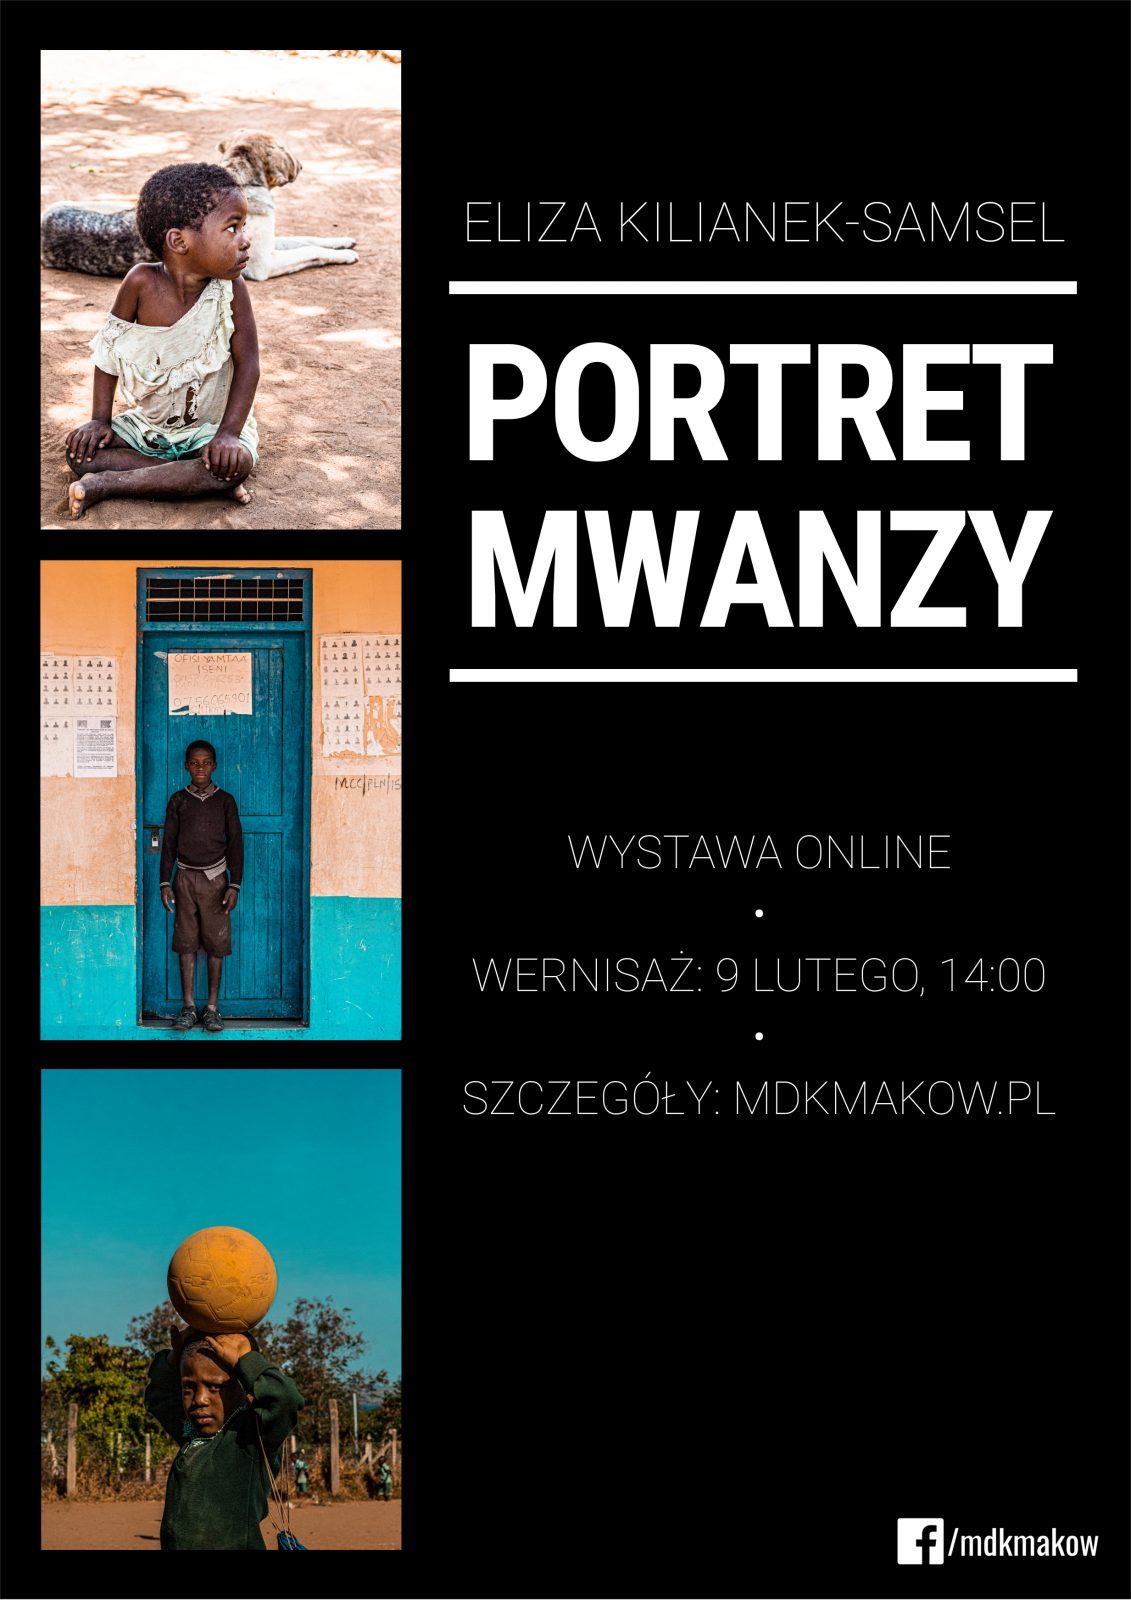 Plakat wystawy online zatytułowanej "PORTRET MWANZY". Na czarnym tle po lewej stronie trzy zdjęcia dzieci umieszczone pionowo. Po prawej stronie napisy również umieszczone pionowo, imię i nazwisko autorki, tytuł i termin wystawy online.